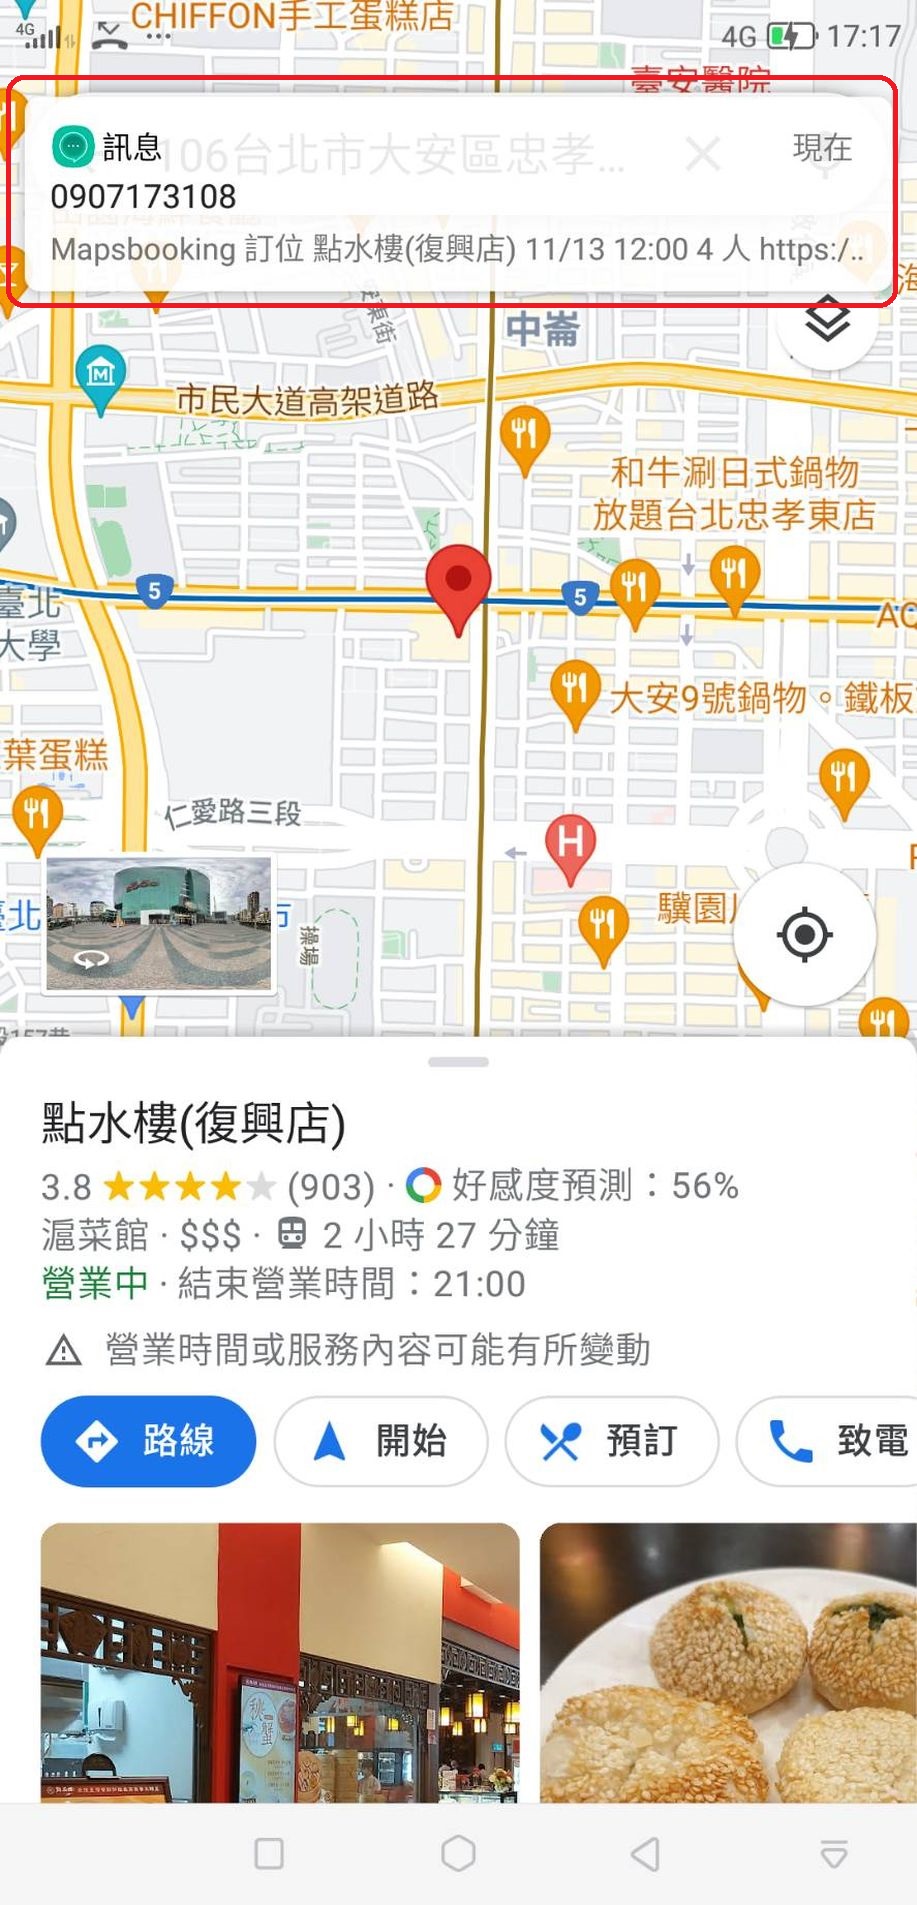 Google Map一鍵訂位【Mapsbooking知識7551地圖預訂候位】方便!便宜!Google地圖上的店家必備 吃貨旅遊作家水靜葳ING找樂子 (5)